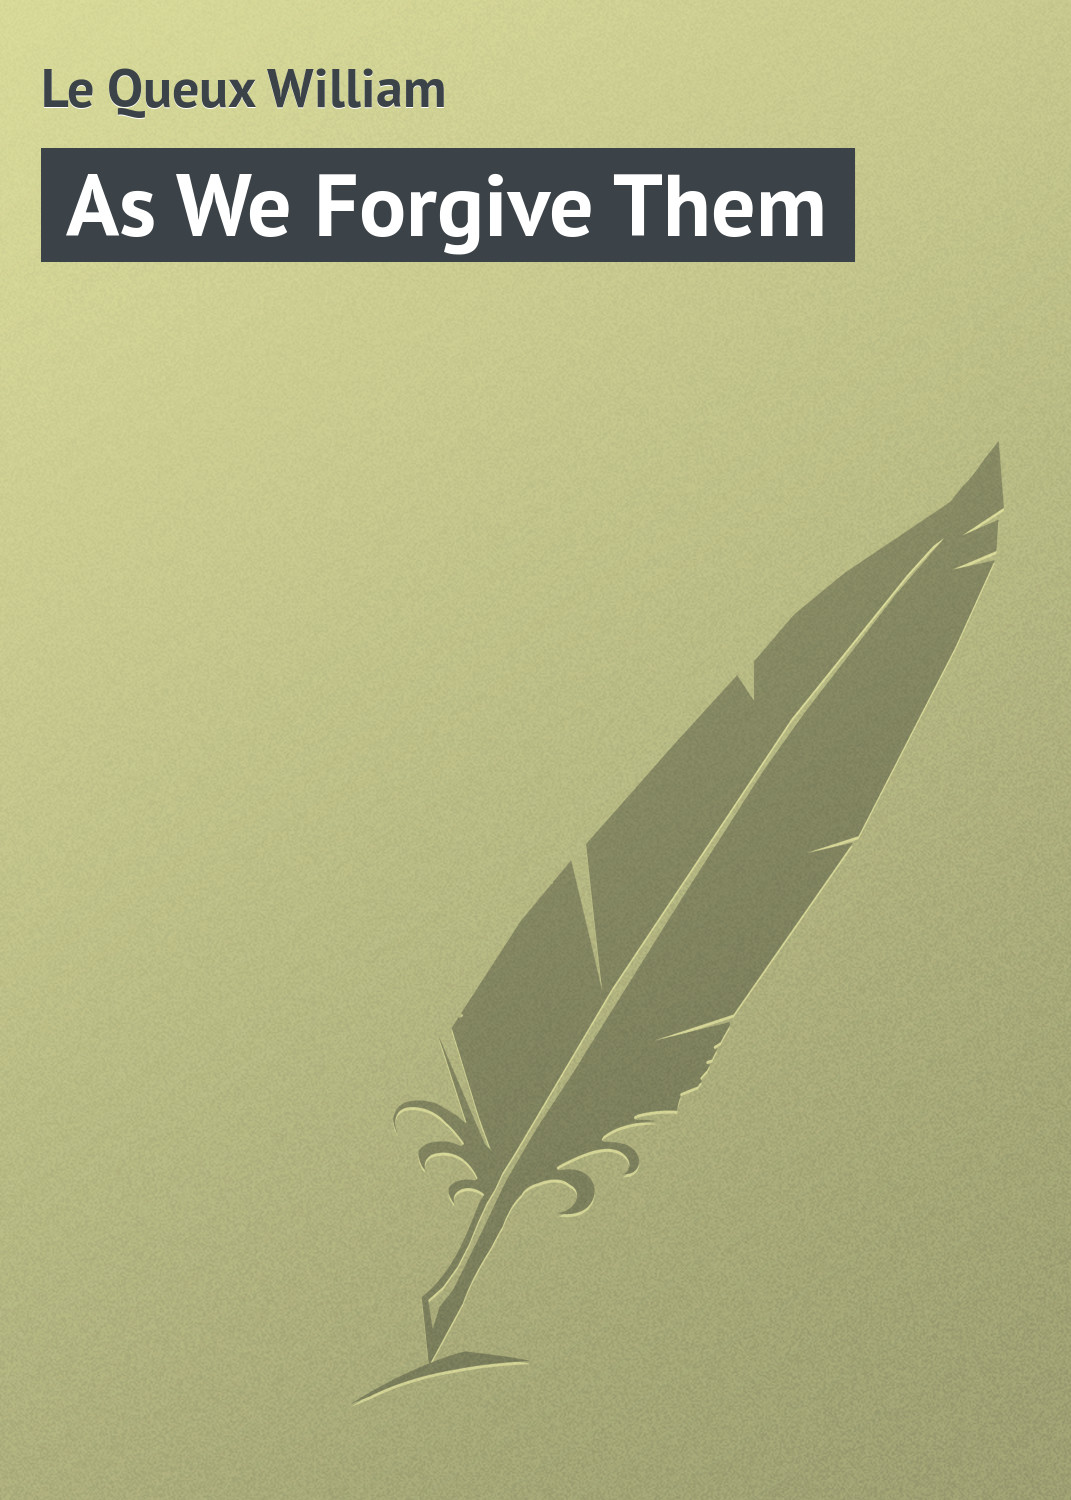 Книга As We Forgive Them из серии , созданная William Le Queux, может относится к жанру Зарубежная классика. Стоимость электронной книги As We Forgive Them с идентификатором 23154651 составляет 5.99 руб.